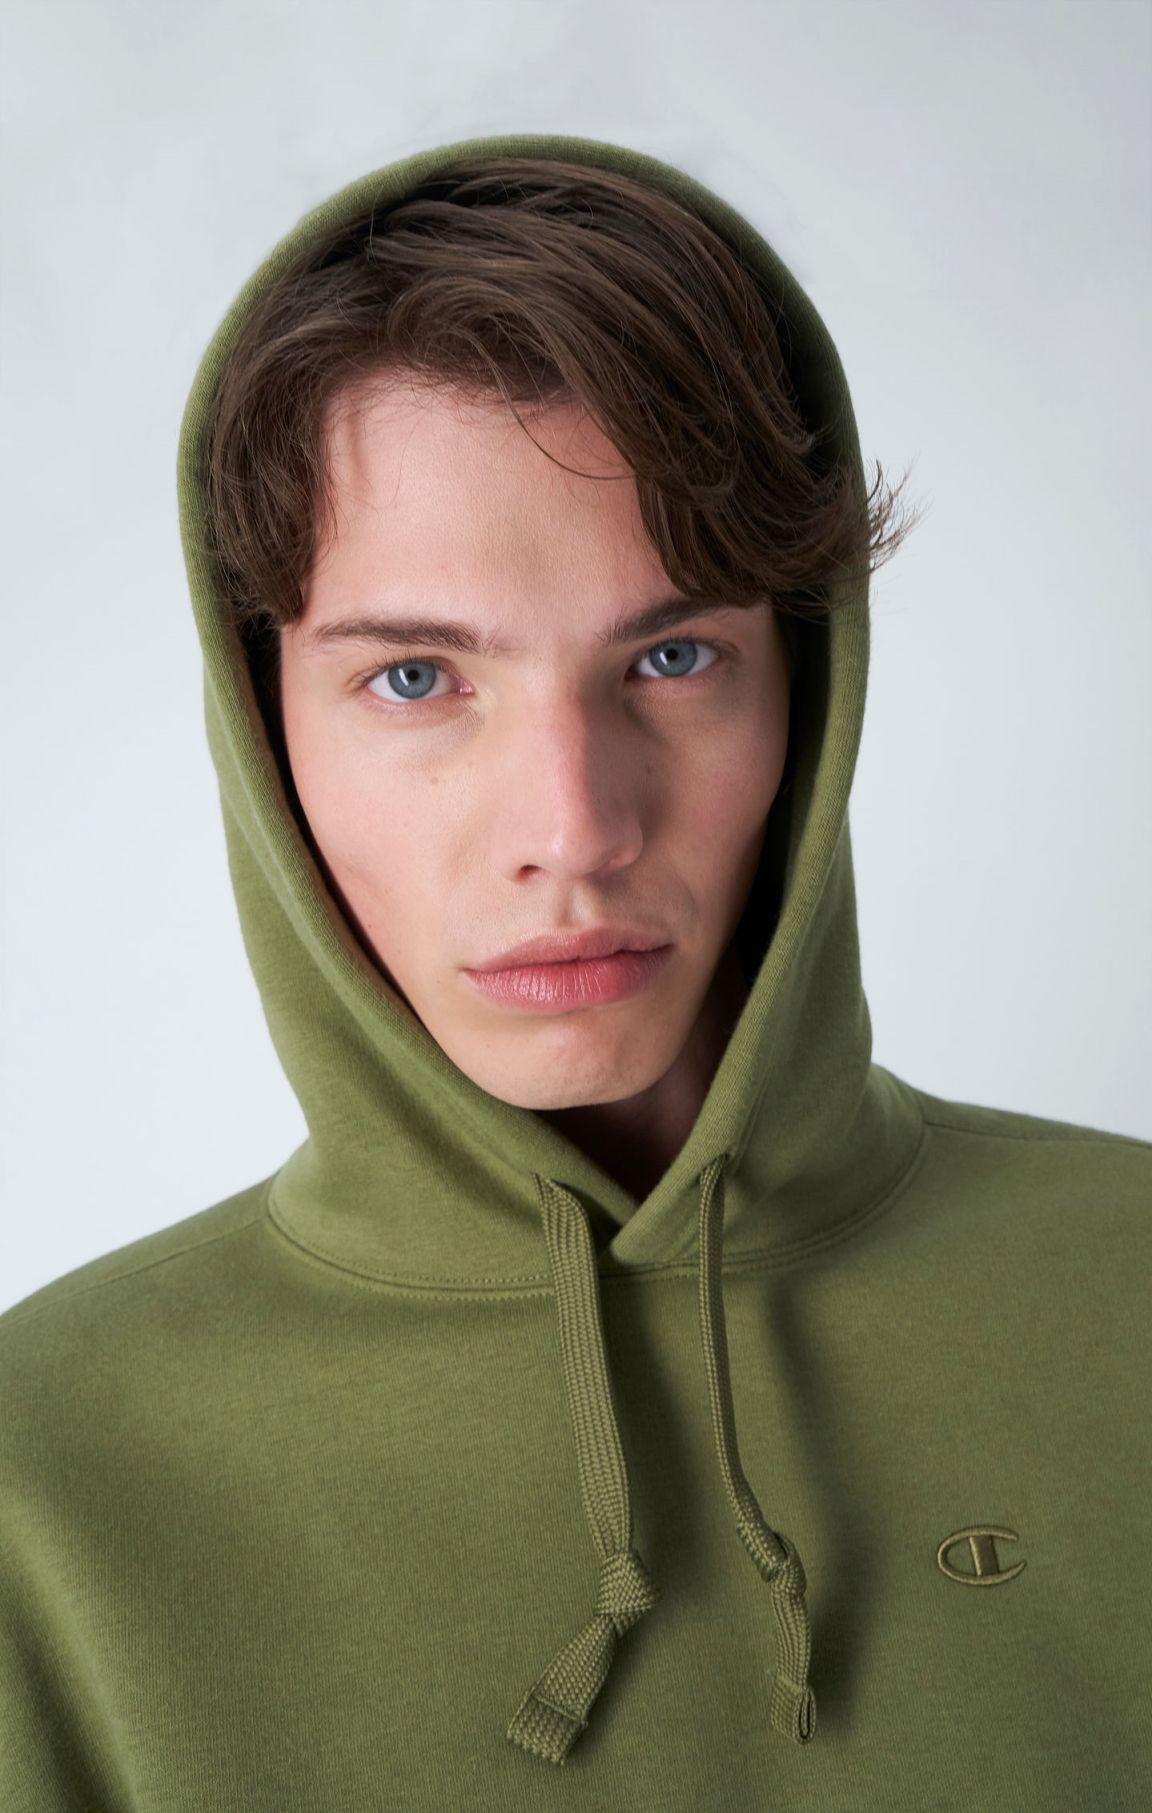 Vert Olive Sweatshirt à capuche et logo C ton sur ton